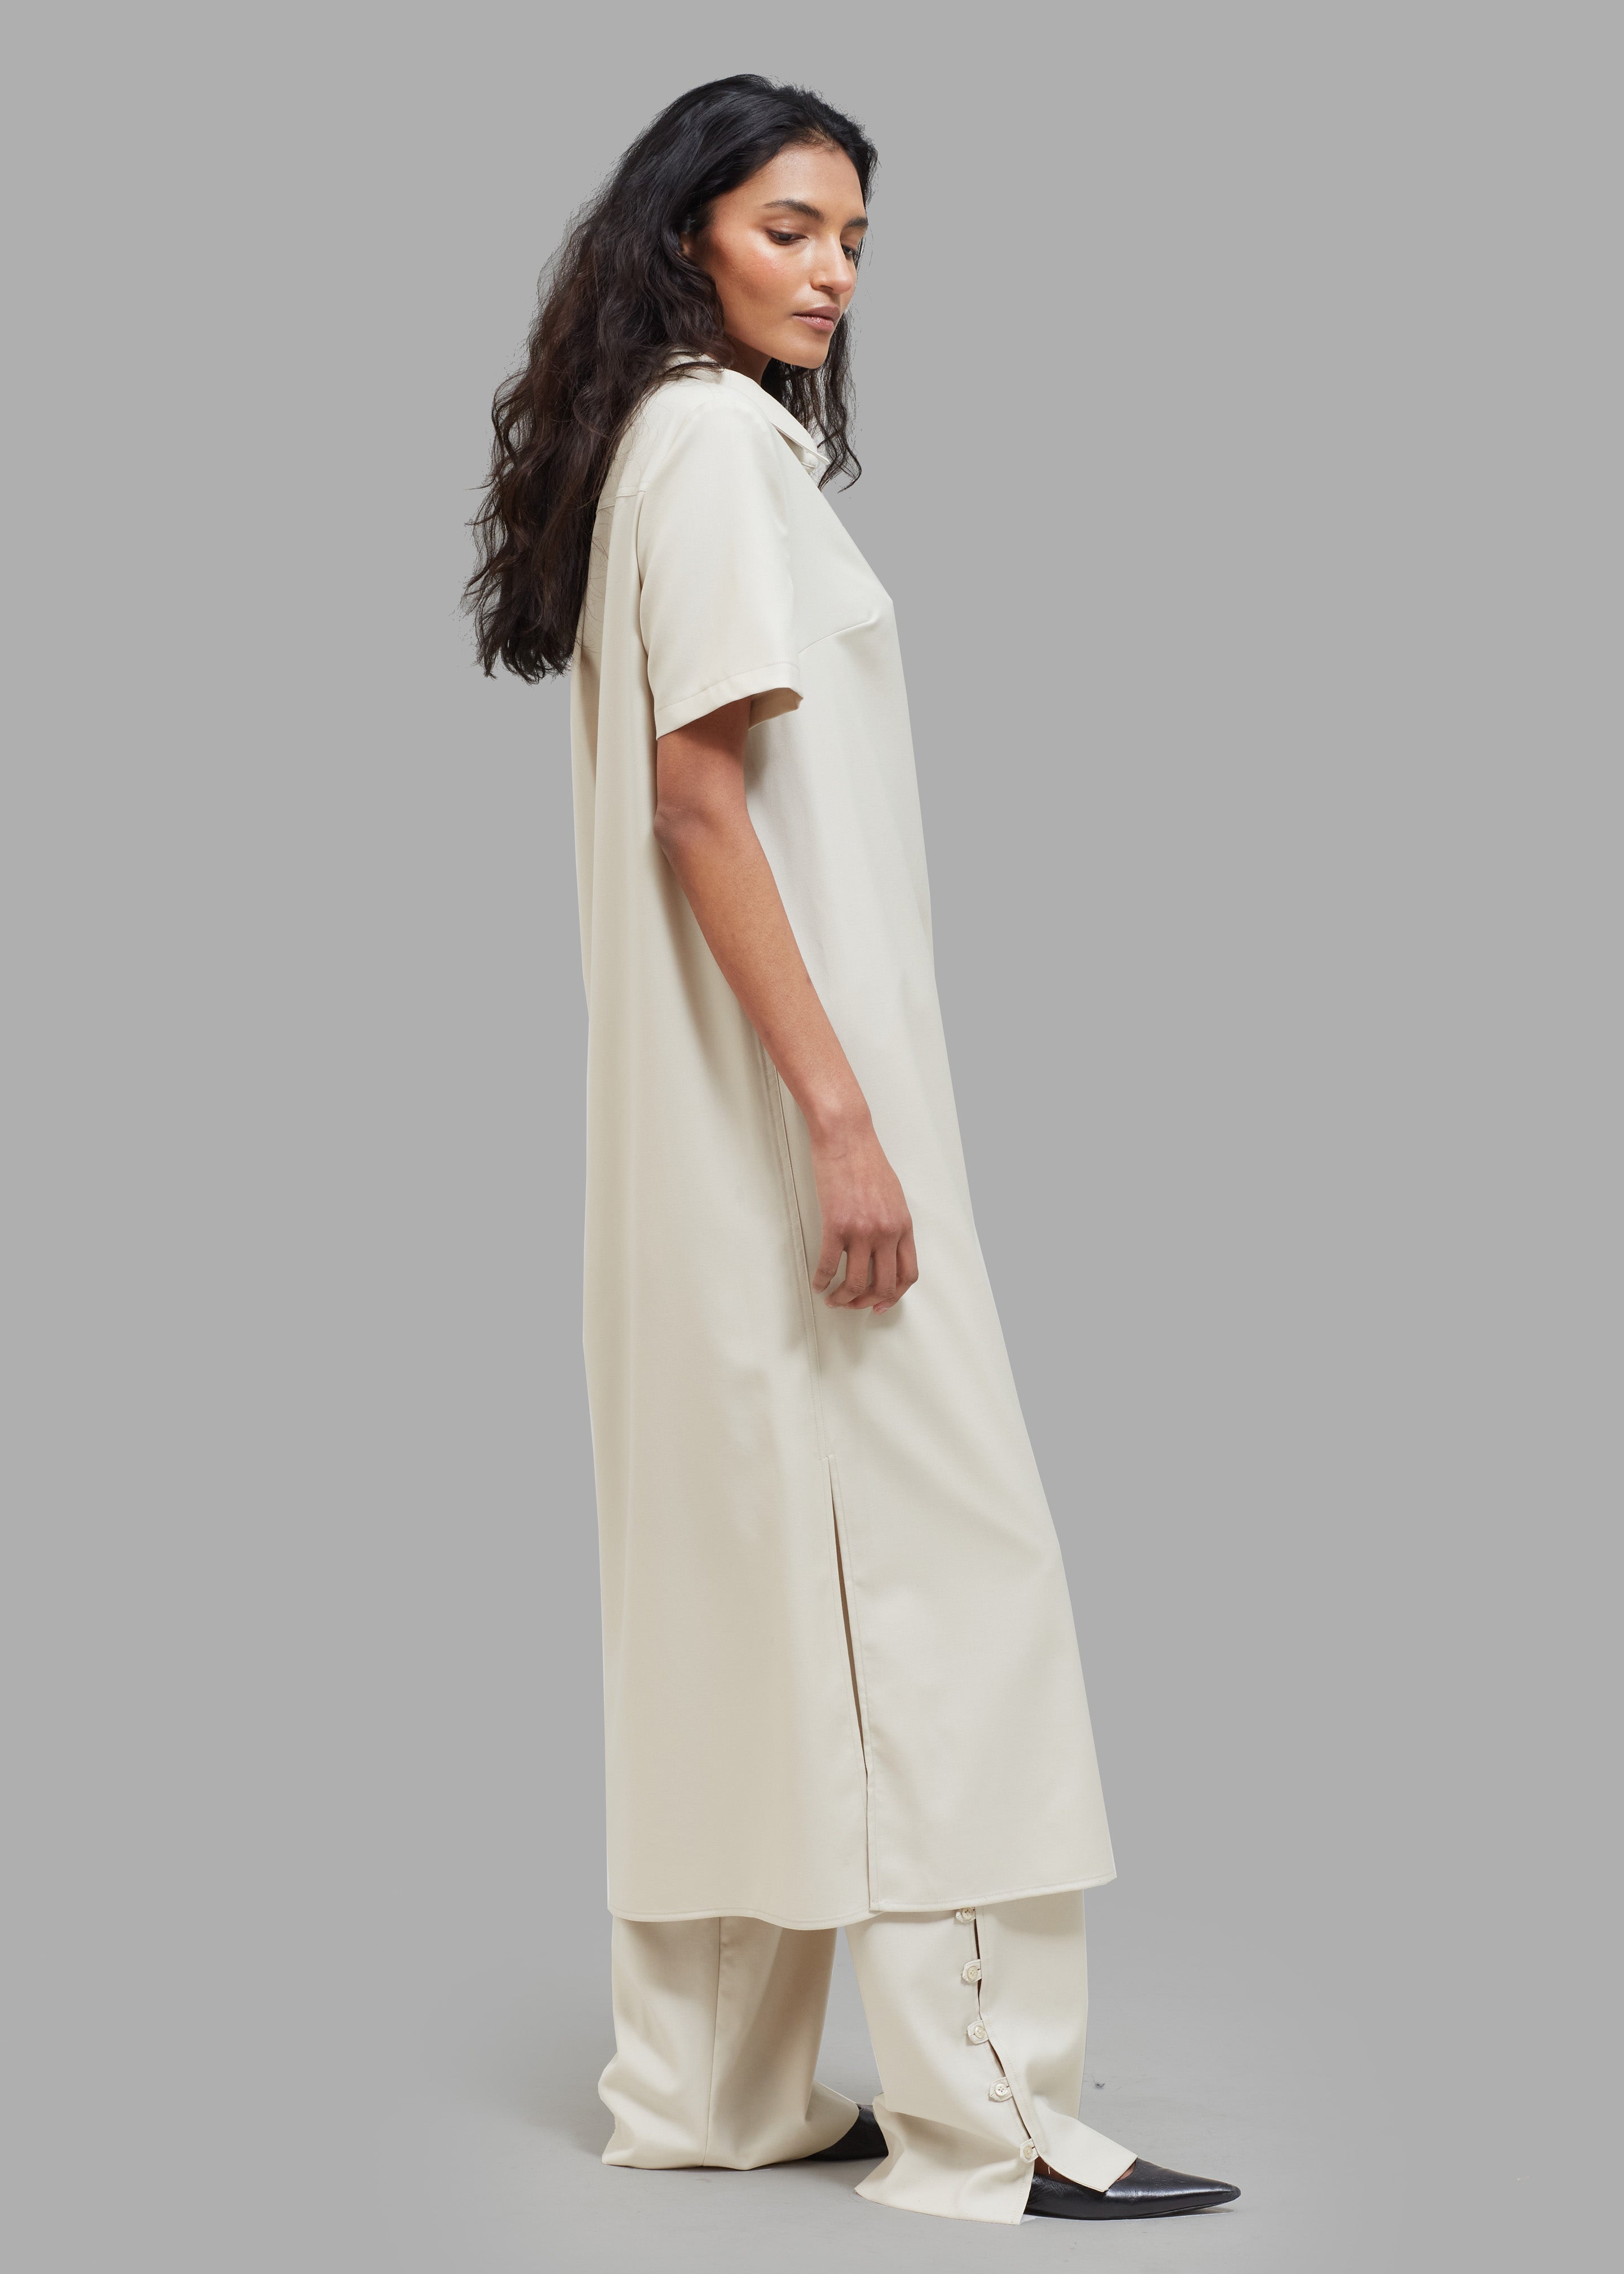 Loulou Studio Bira Polo Shirt Dress - Beige - 8